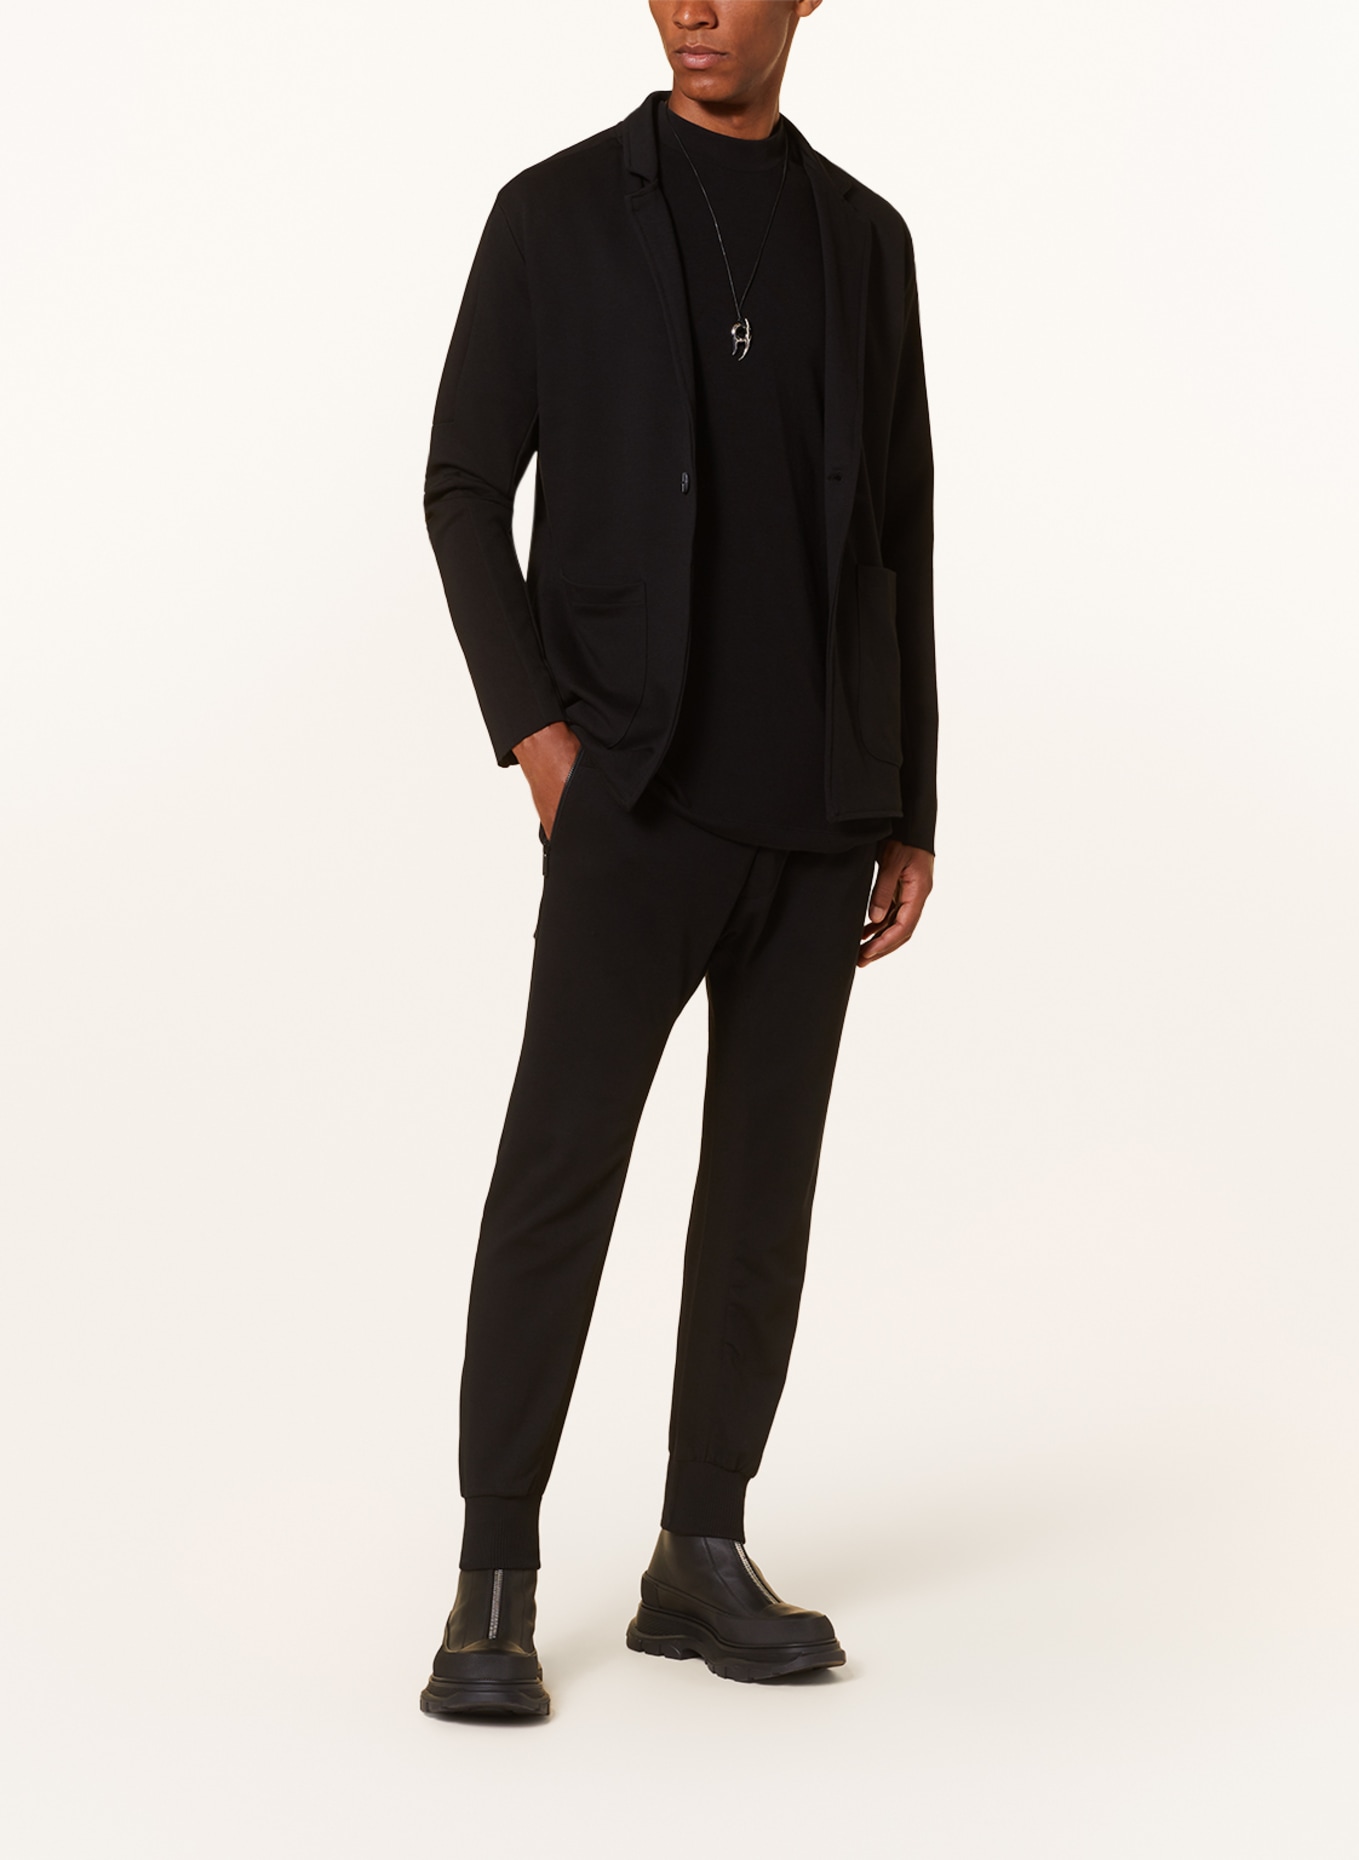 thom/krom Jersey jacket extra slim fit, Color: BLACK (Image 2)